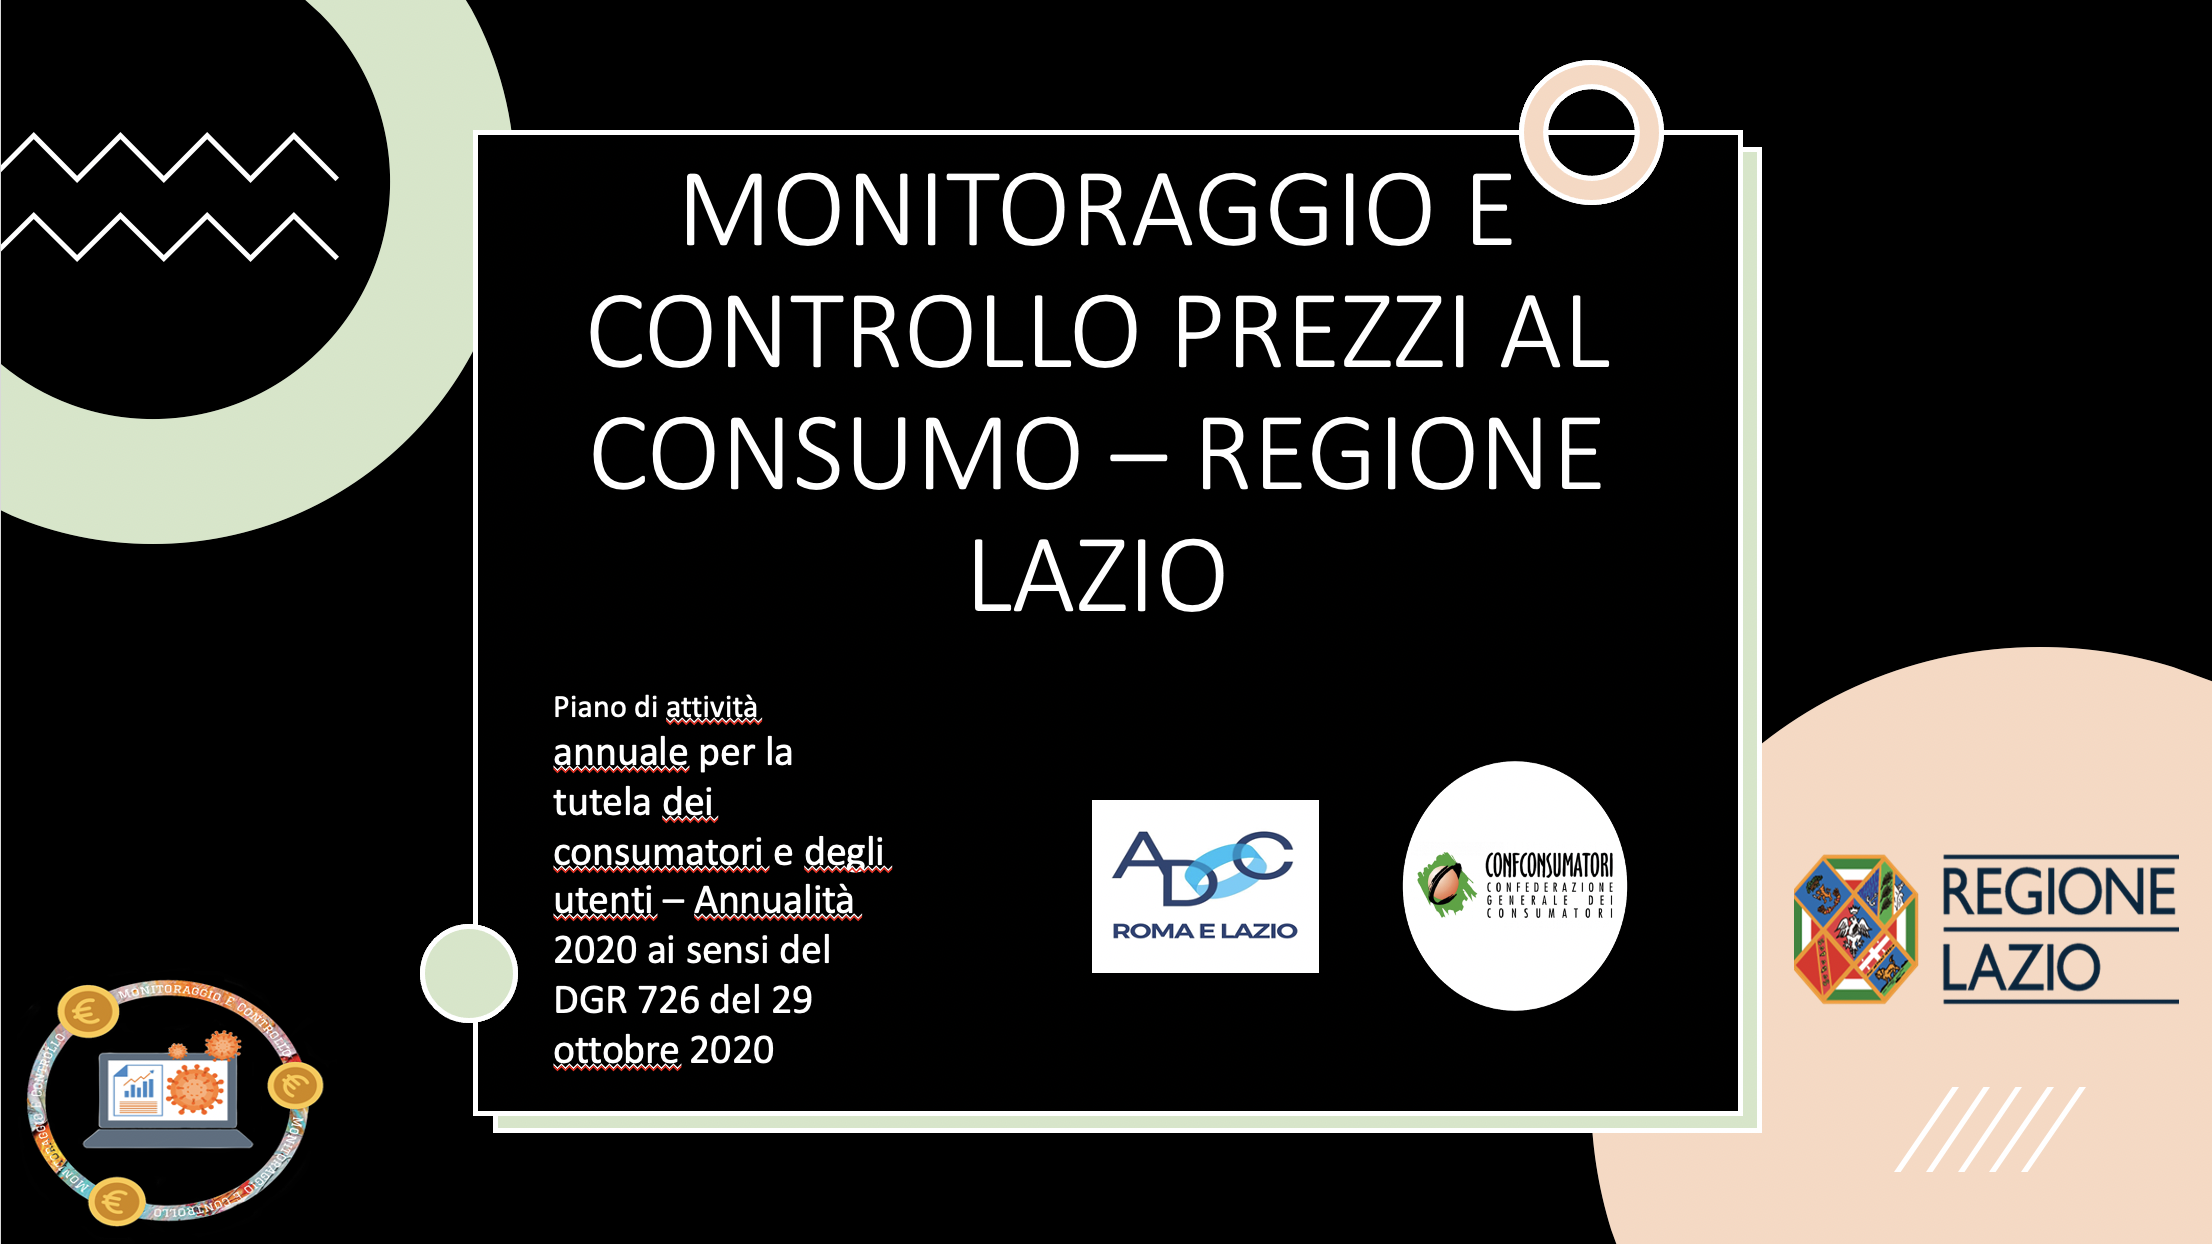 Monitoraggio e controllo prezzi al consumo Regione Lazio